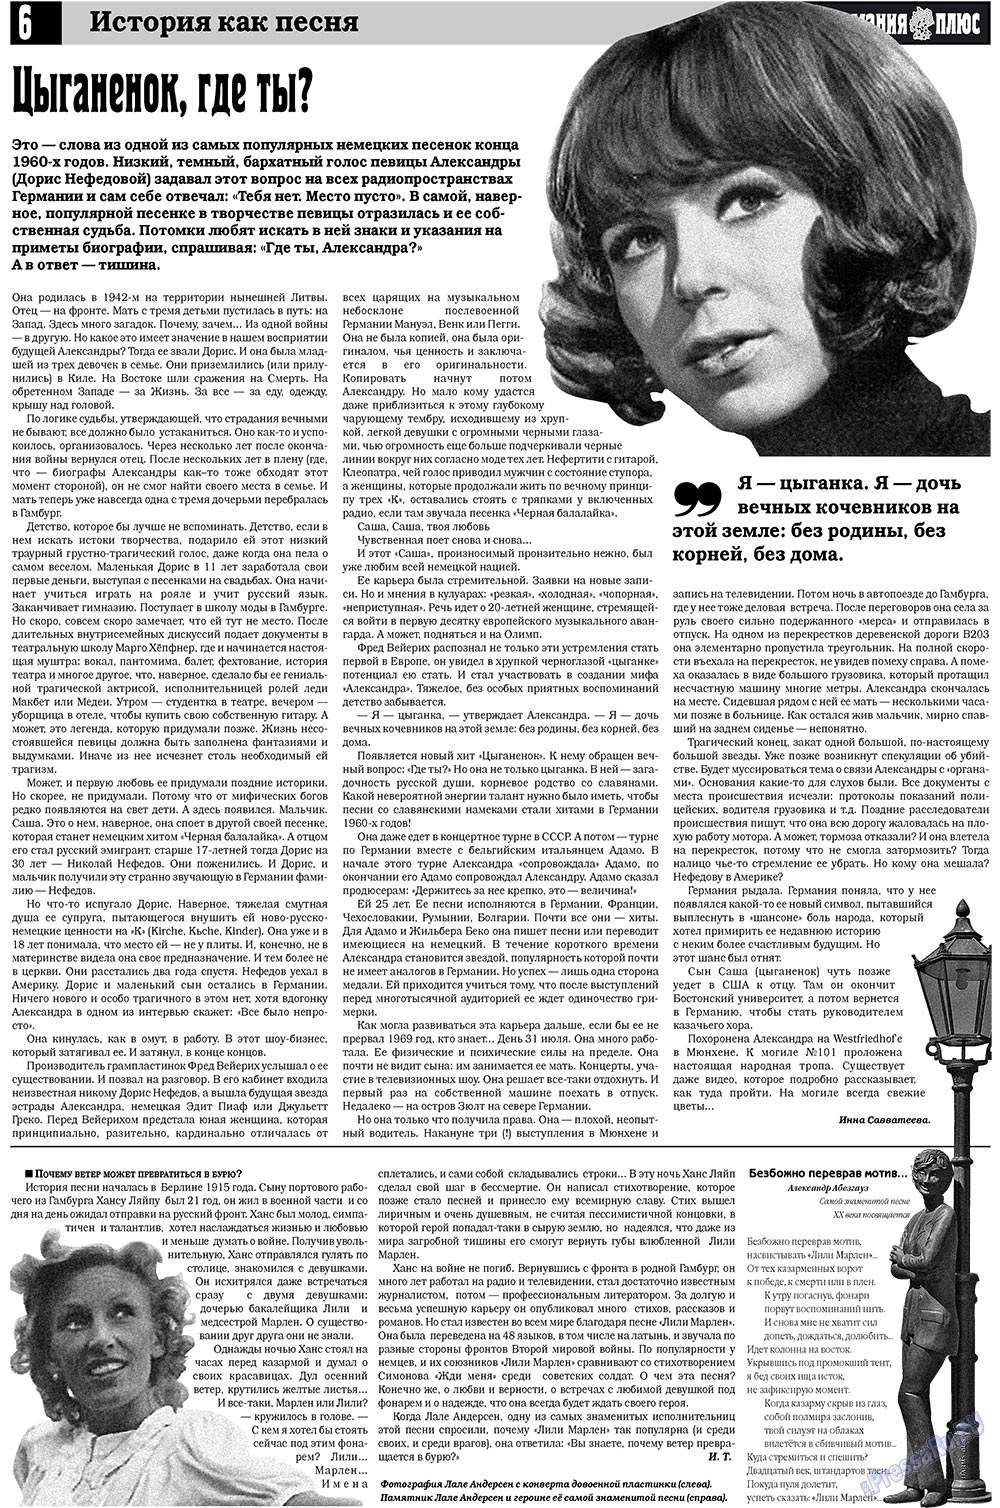 Германия плюс (газета). 2009 год, номер 9, стр. 6